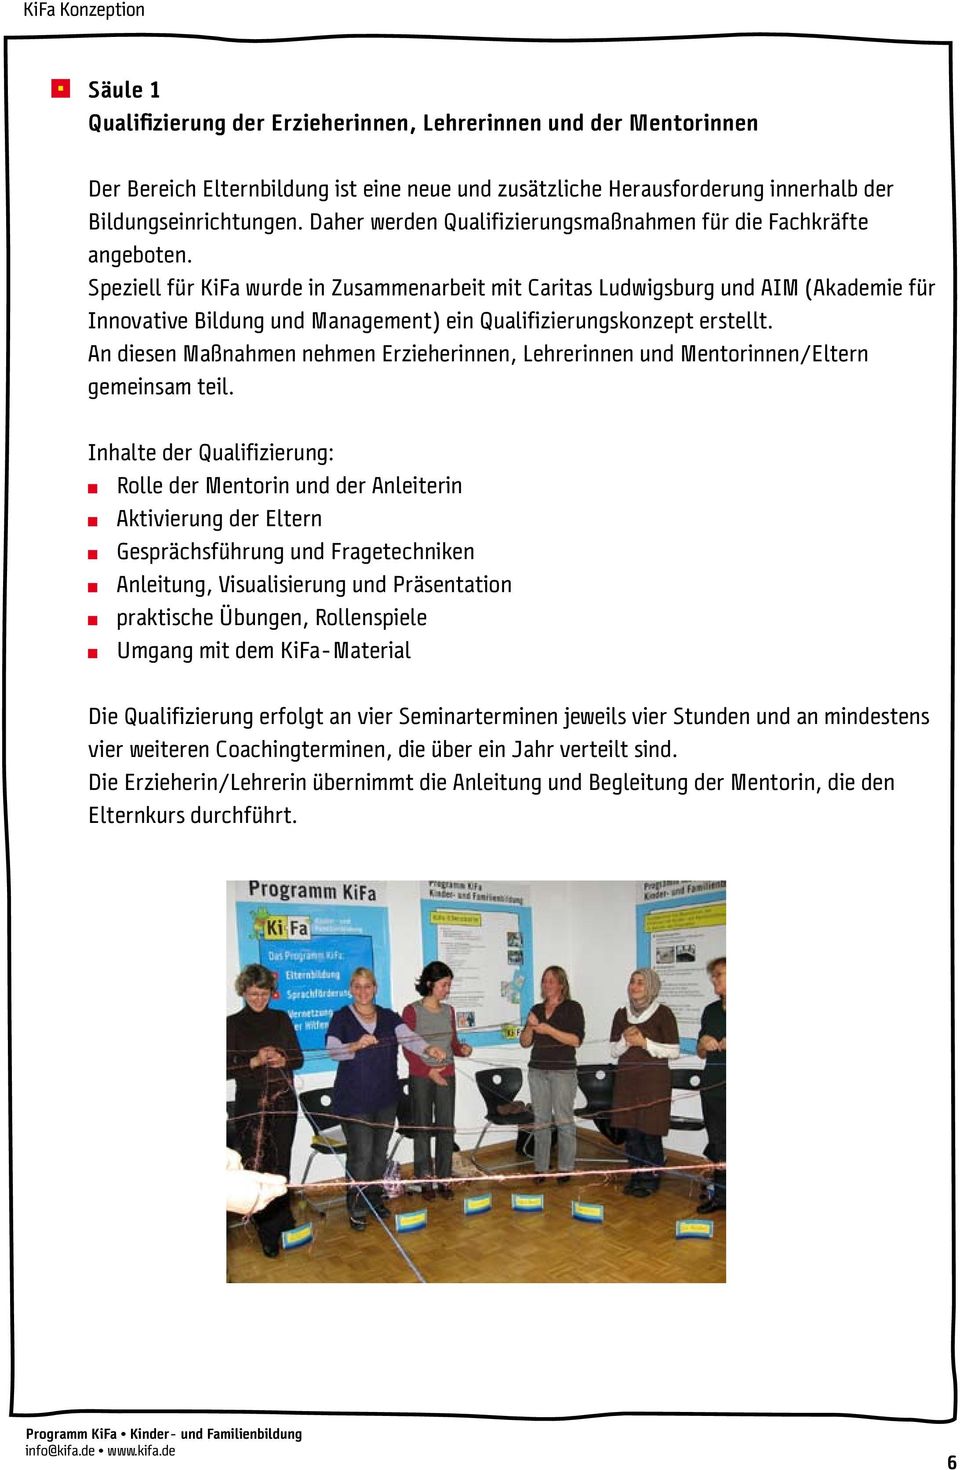 Speziell für KiFa wurde in Zusammenarbeit mit Caritas Ludwigsburg und AIM (Akademie für Innovative Bildung und Management) ein Qualifizierungskonzept erstellt.